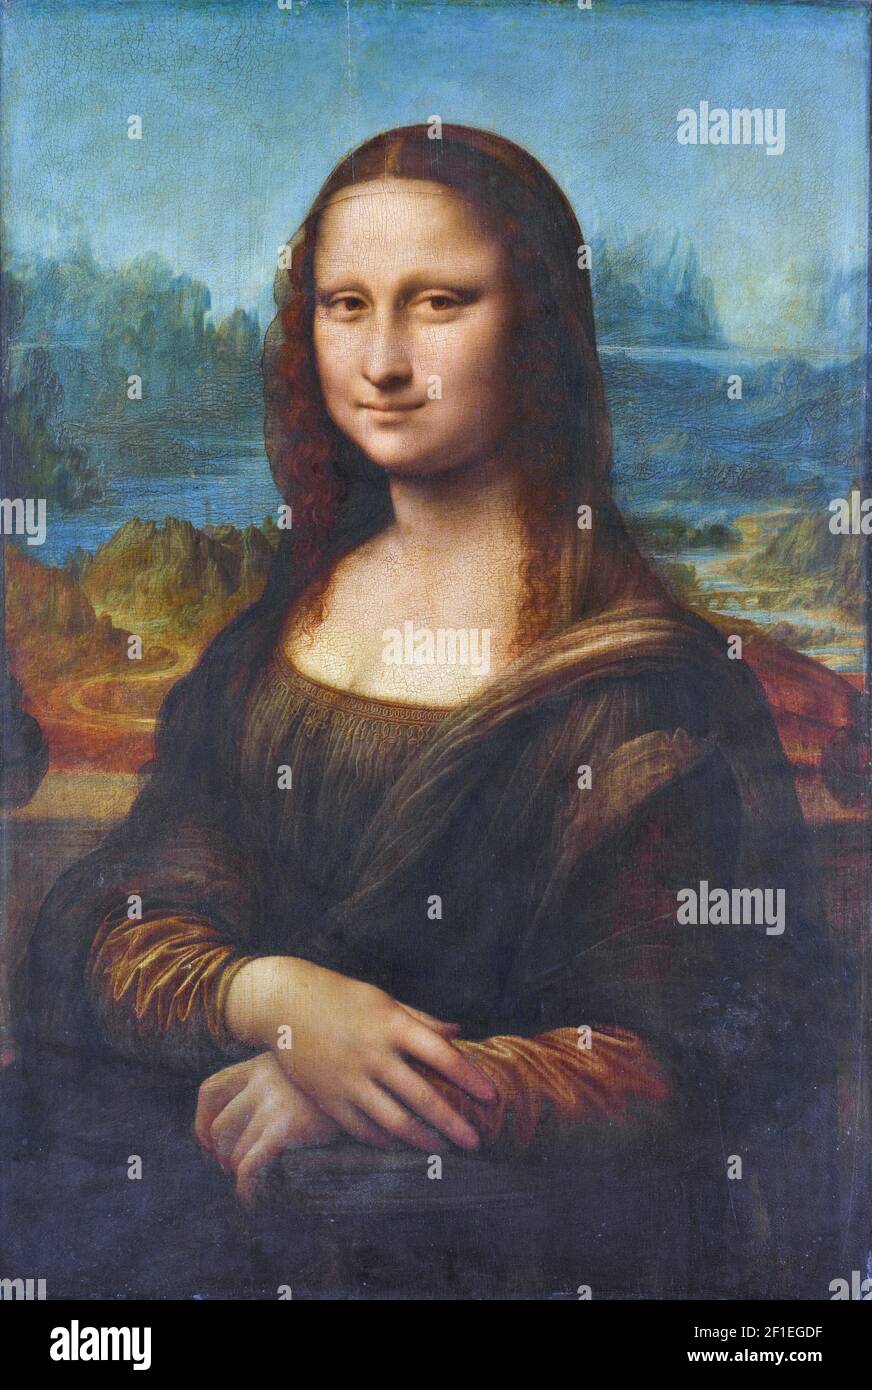 Leonardo da Vinci, Mona Lisa, 1503 - 1506, huile sur panneau. Musée Loure, Paris, France. Banque D'Images